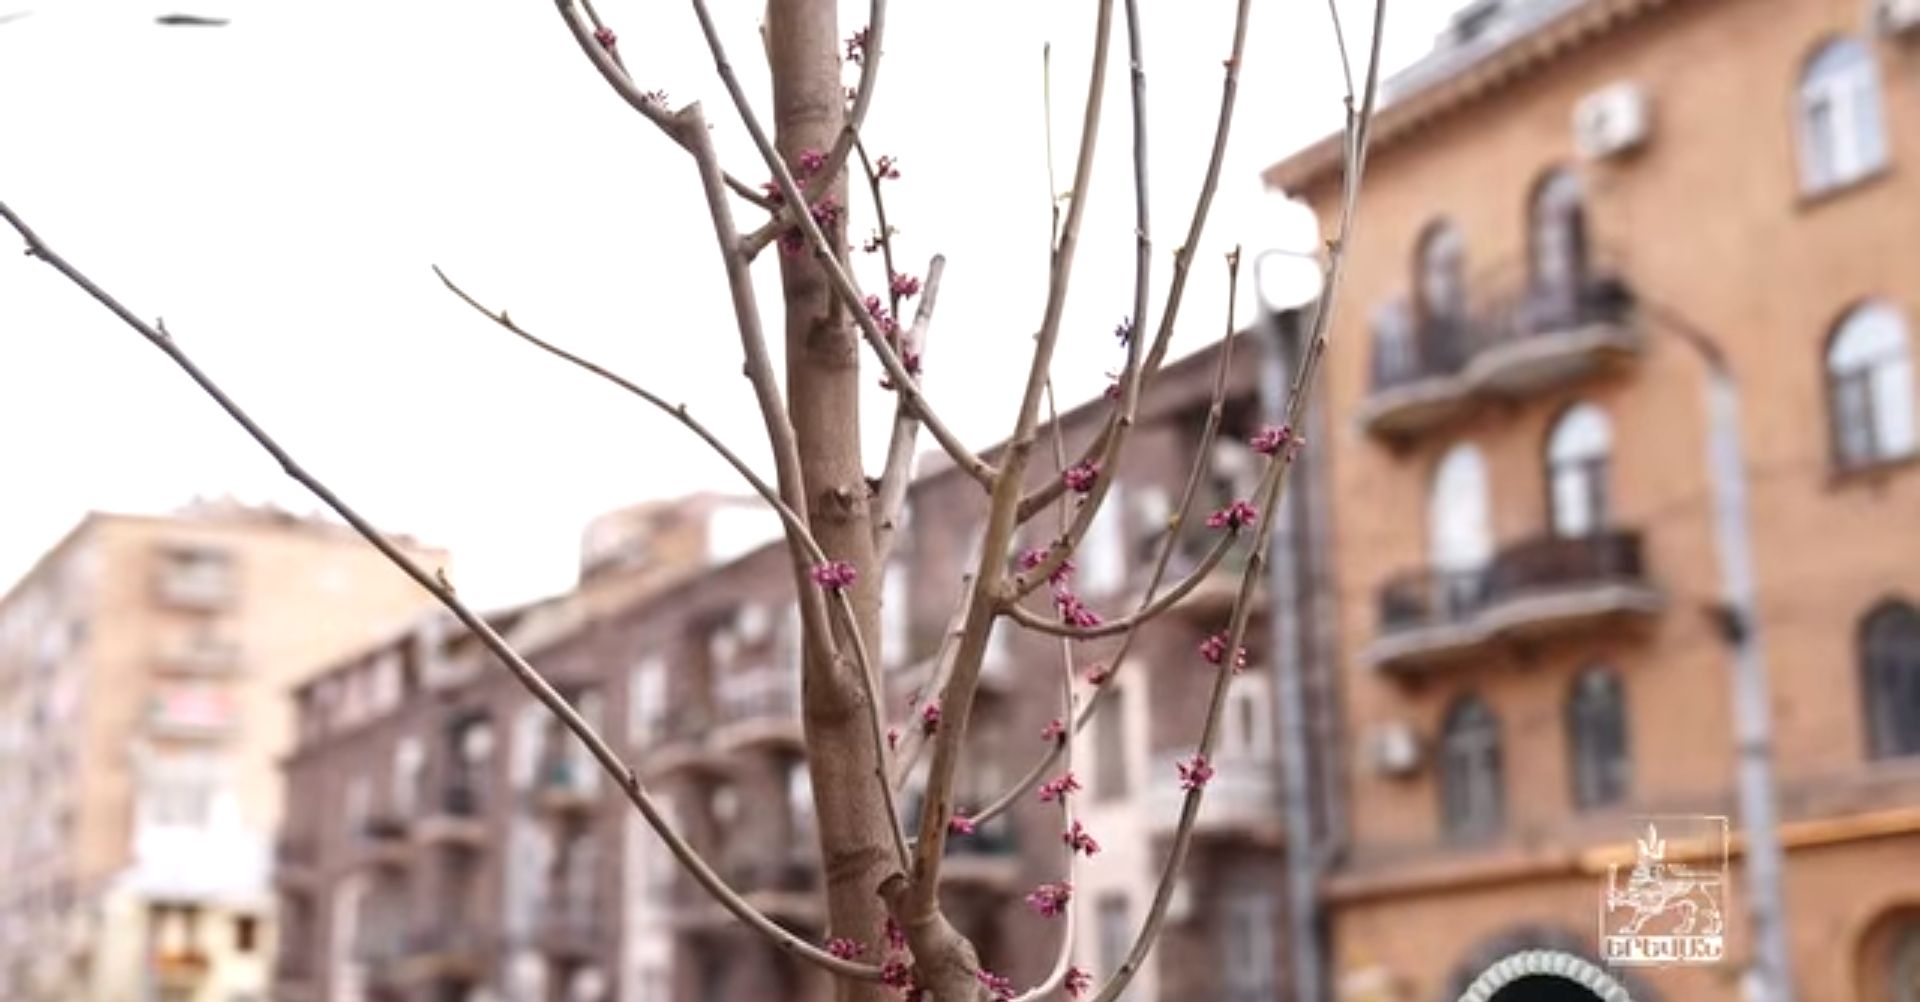 Երևանում ծառերի փոխարինման ծրագրով հատված 300-ի փոխարեն 350 ծառ է տնկվել (տեսանյութ)